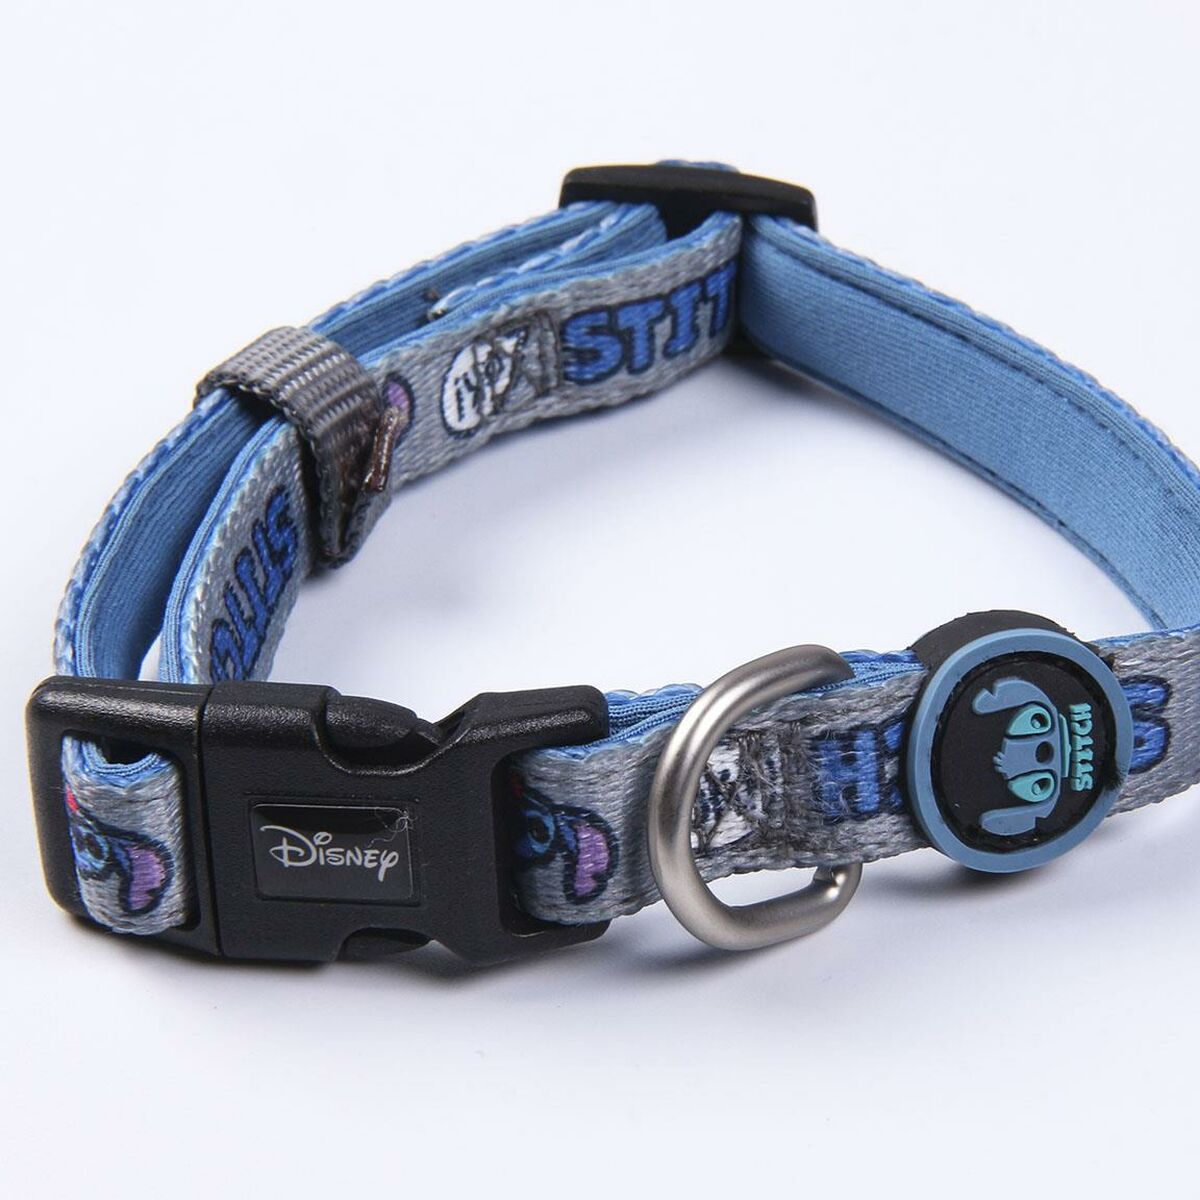 Dog collar Stitch Dark blue